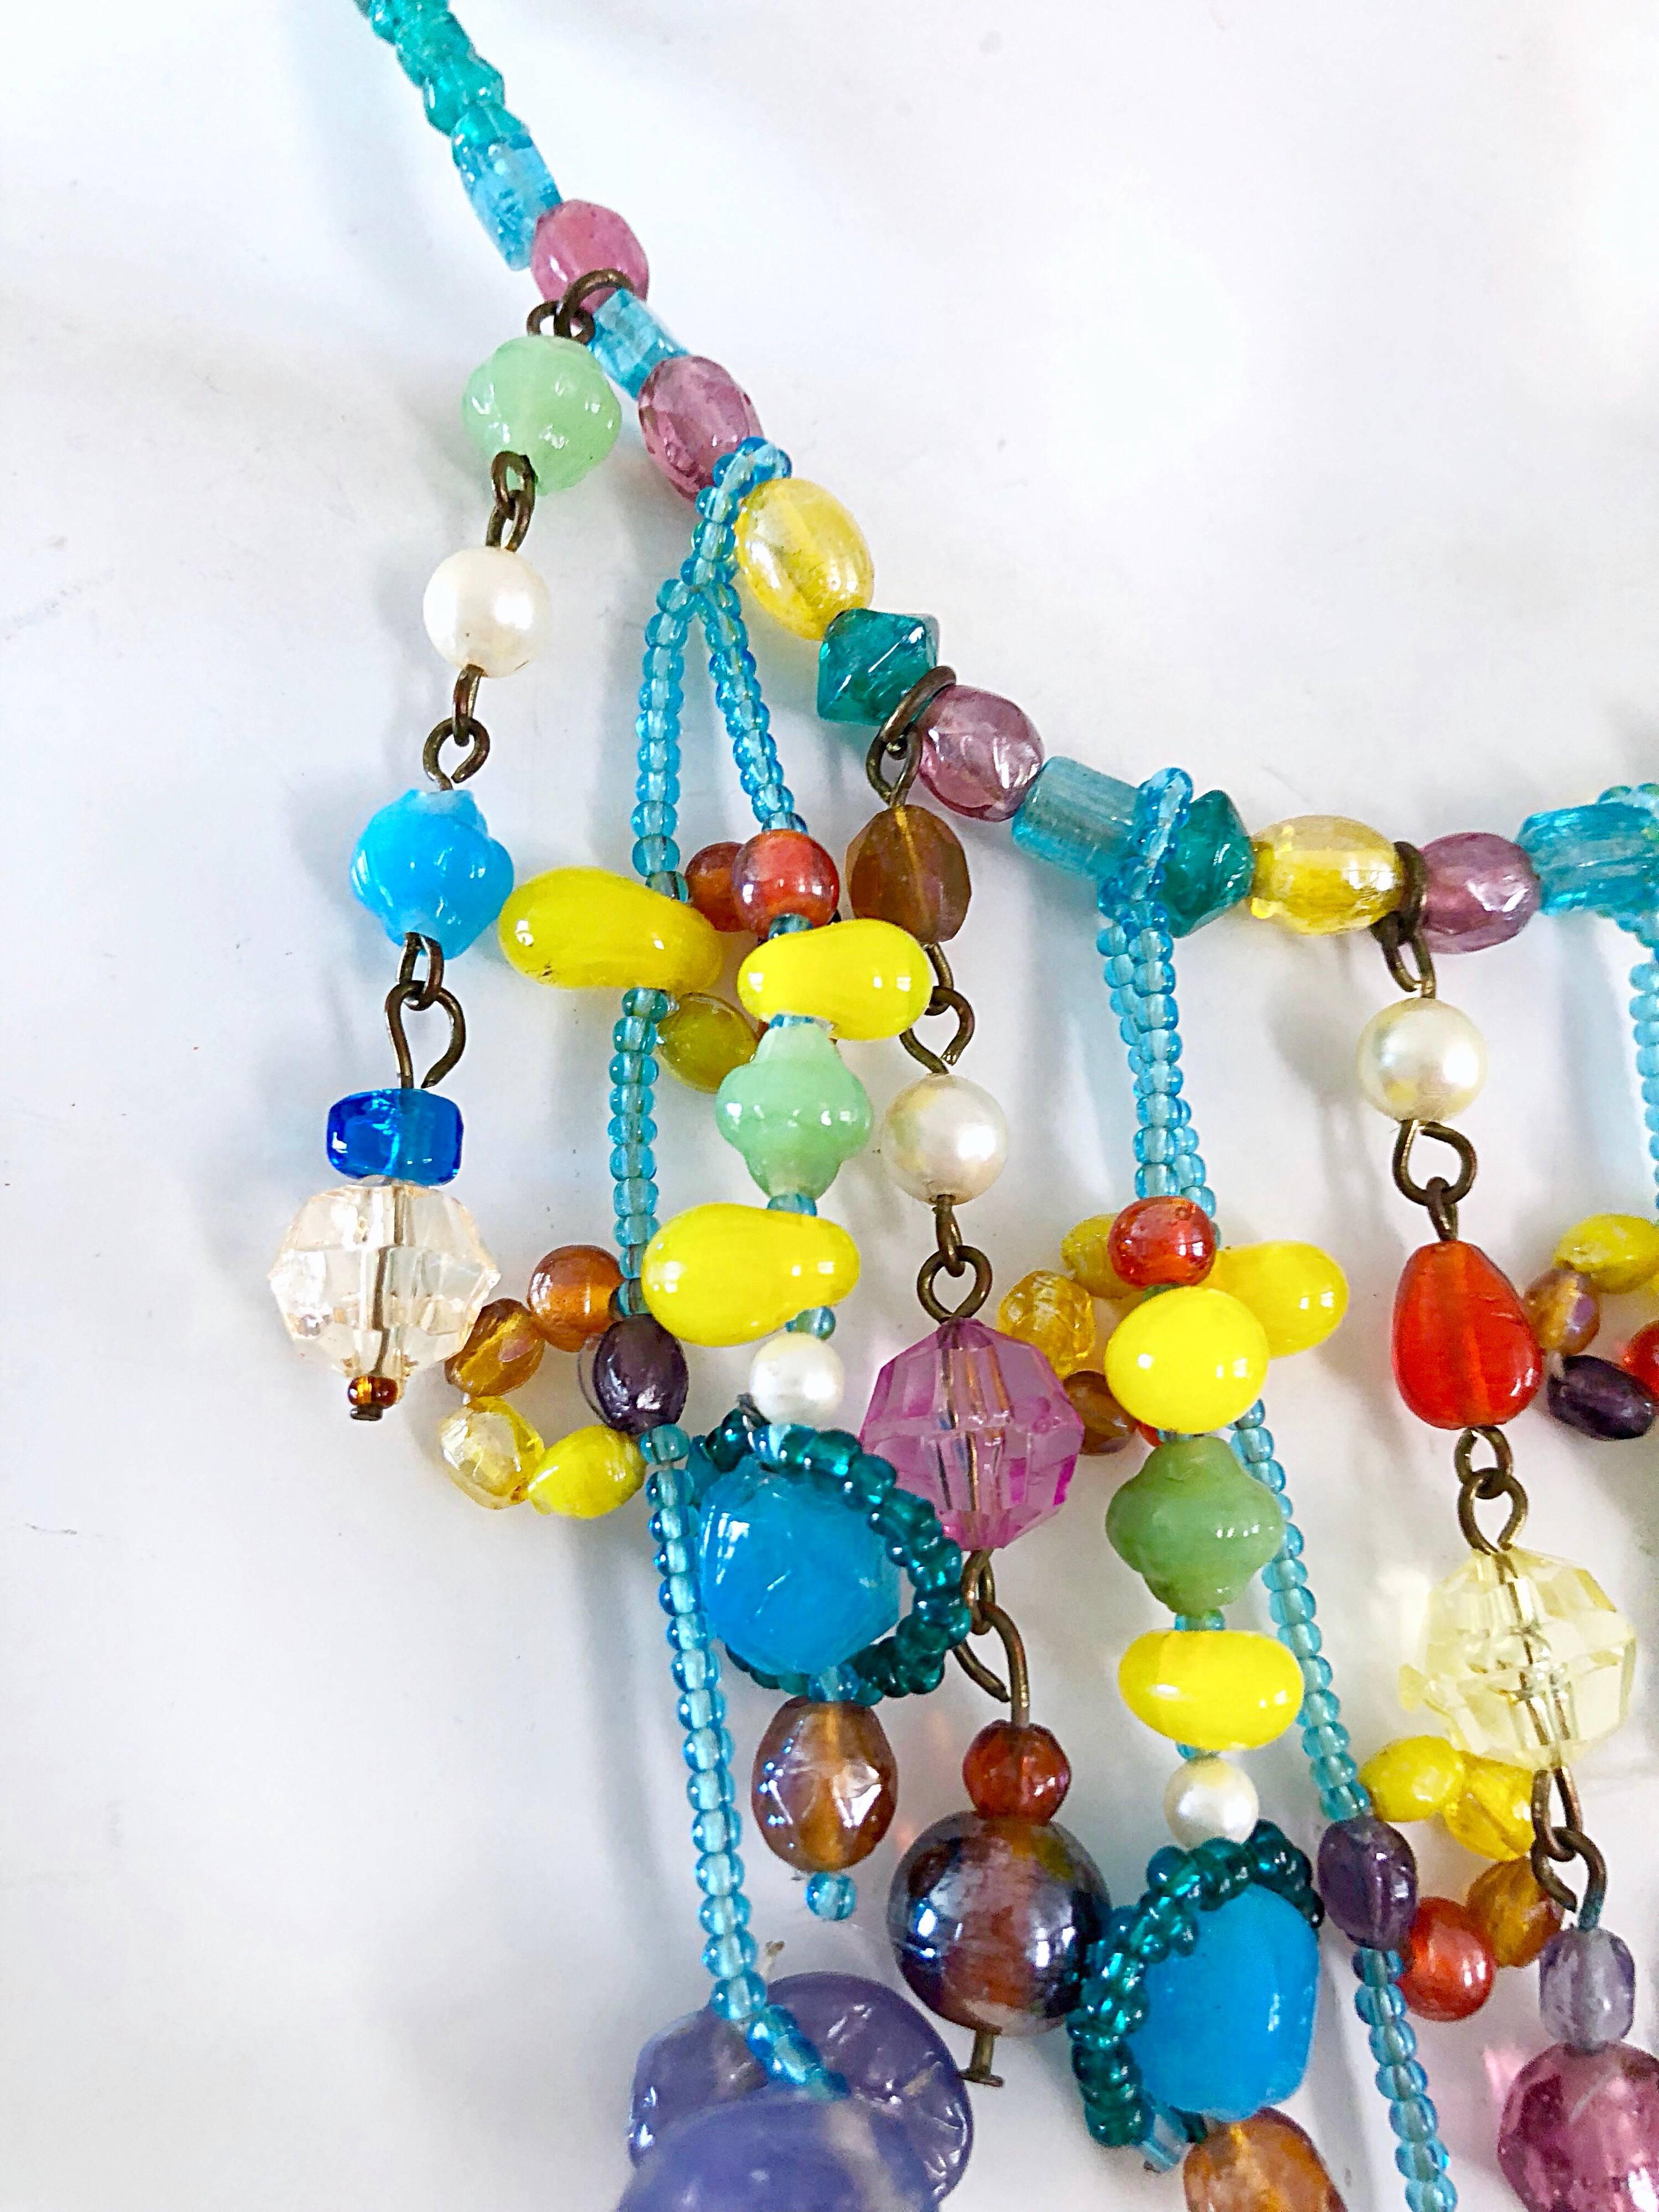 Seltene frühe 80er Jahre MARC LABAT muto farbigen Obstsalat Stil Halskette Halskette. Mit blauen, gelben, lila, blauen, türkisfarbenen, roten und orangefarbenen Perlen, Steinen und Perlen. Verstellbare Länge kann in mehreren Längen getragen werden